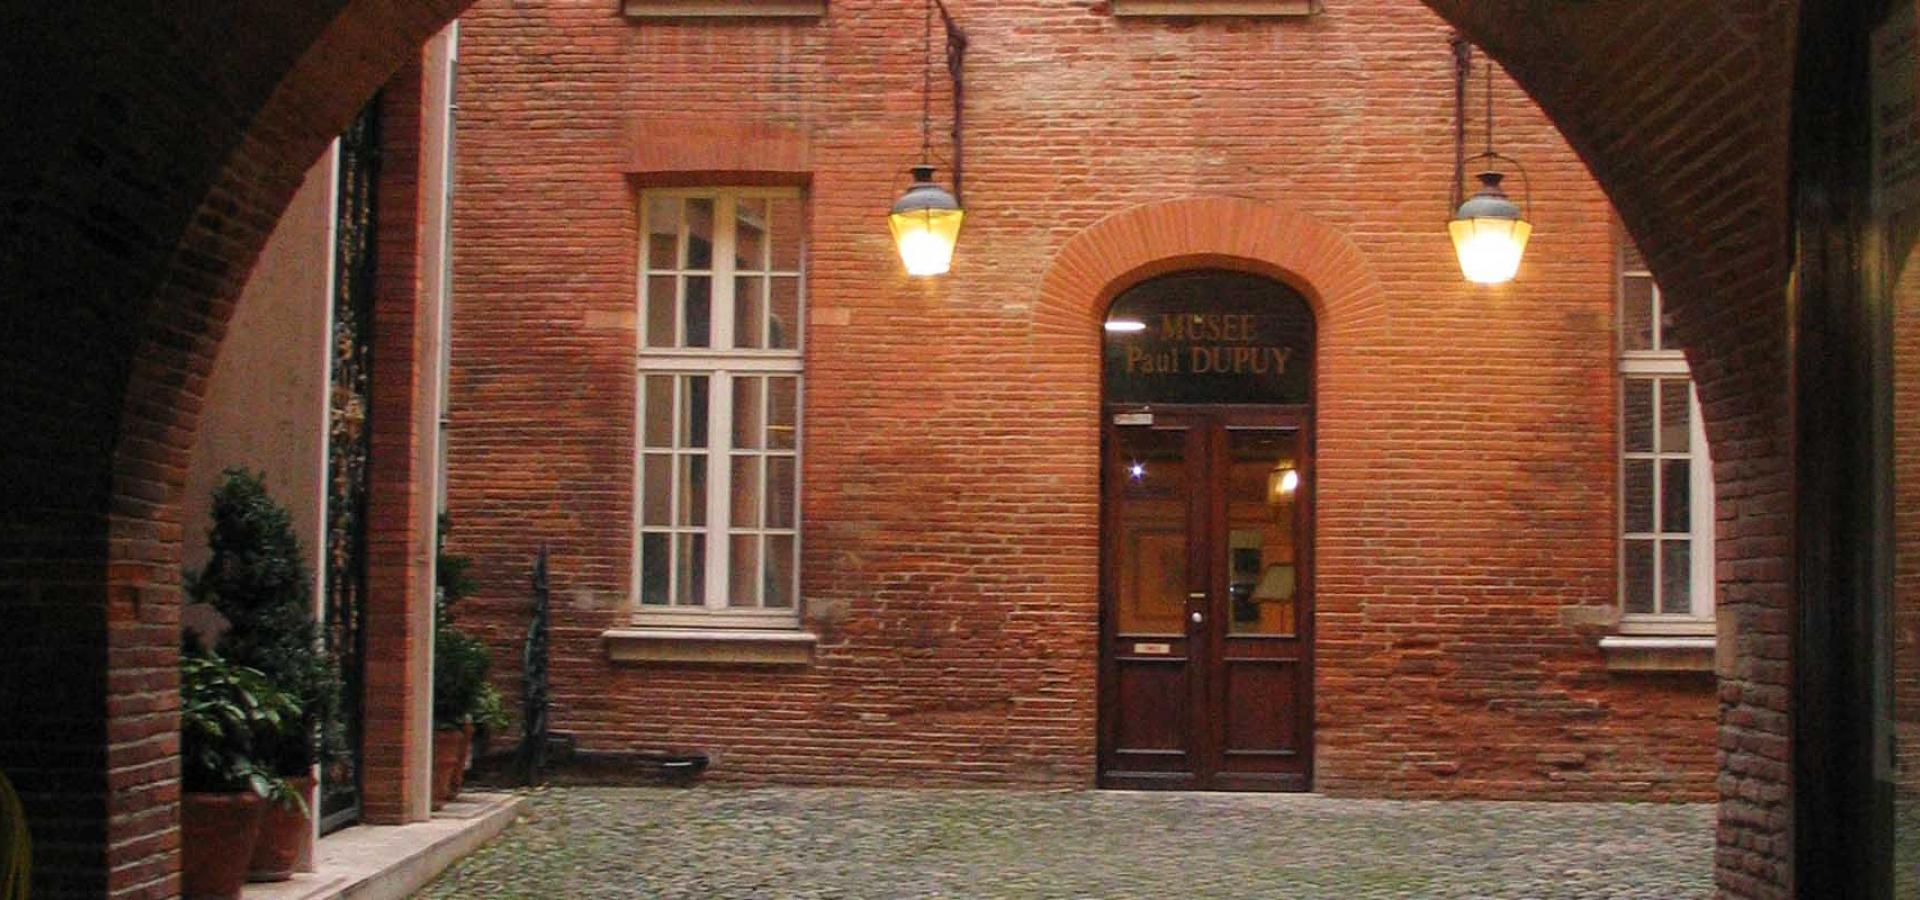 Décor tournage : le musée Paul Dupuy, hôtel particulier à Toulouse